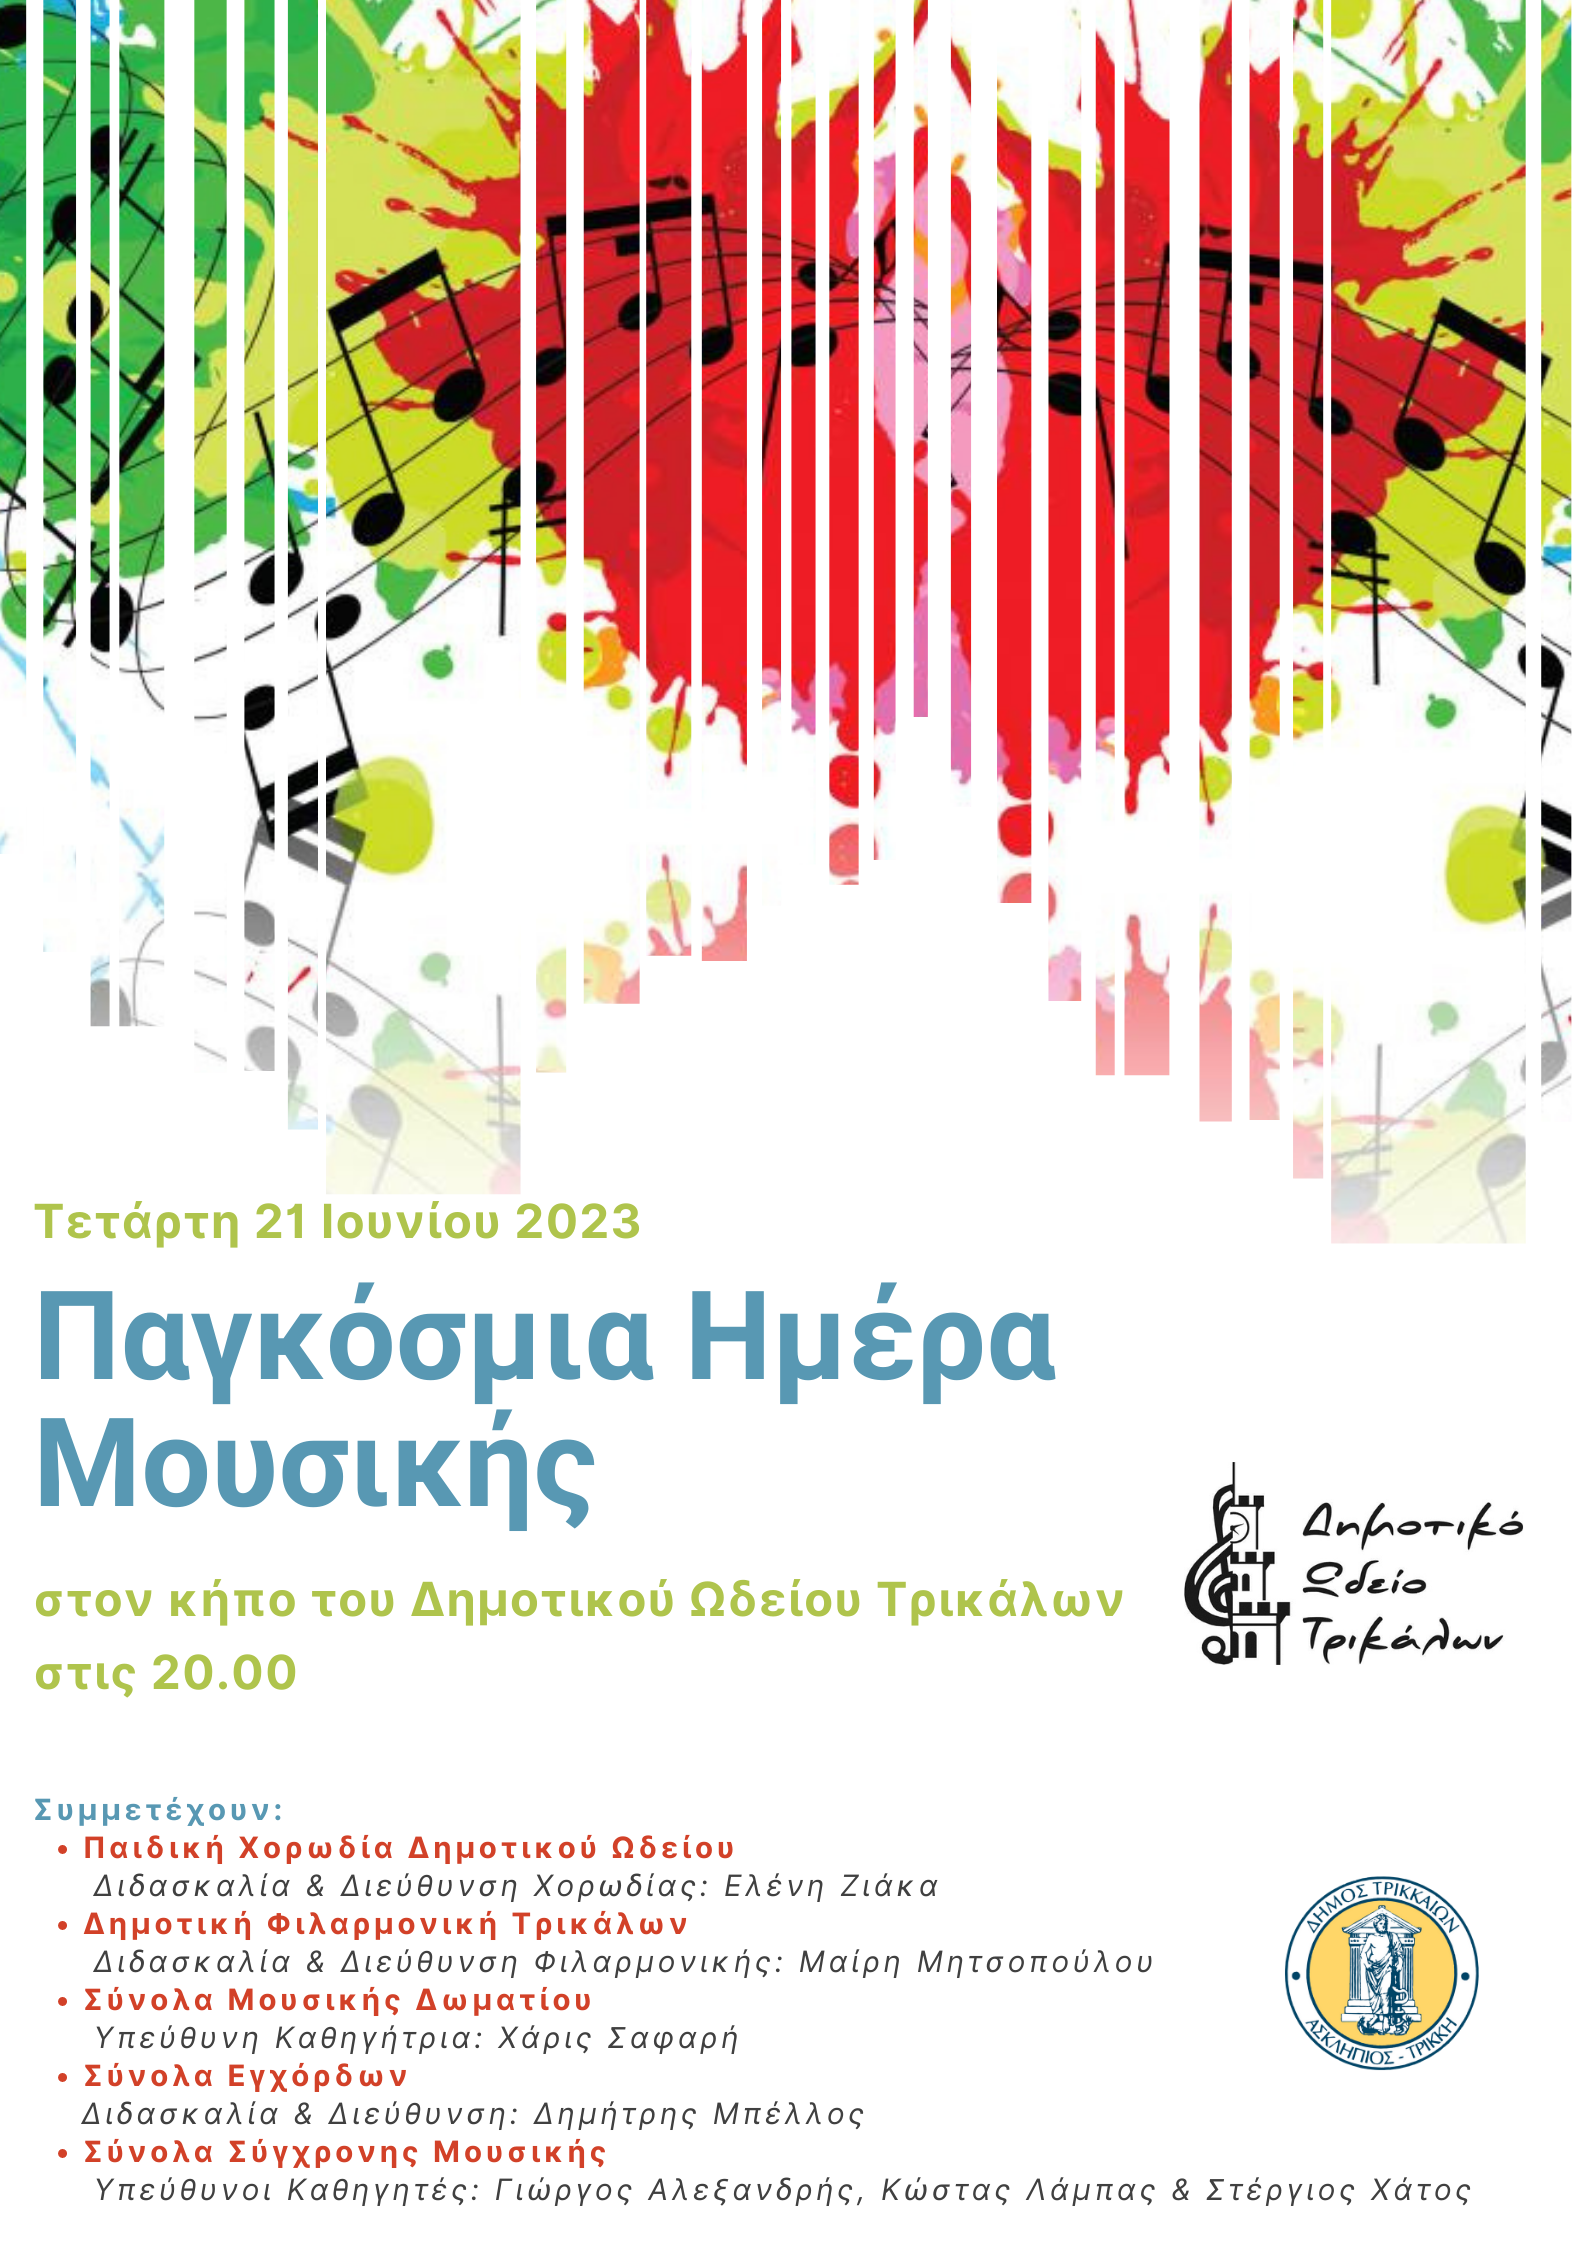 “Νότες στην πόλη”: Εκδηλώσεις και εκπλήξεις από τον Δήμο Τρικκαίων για την Ευρωπαϊκή Ημέρα Μουσικής 2023